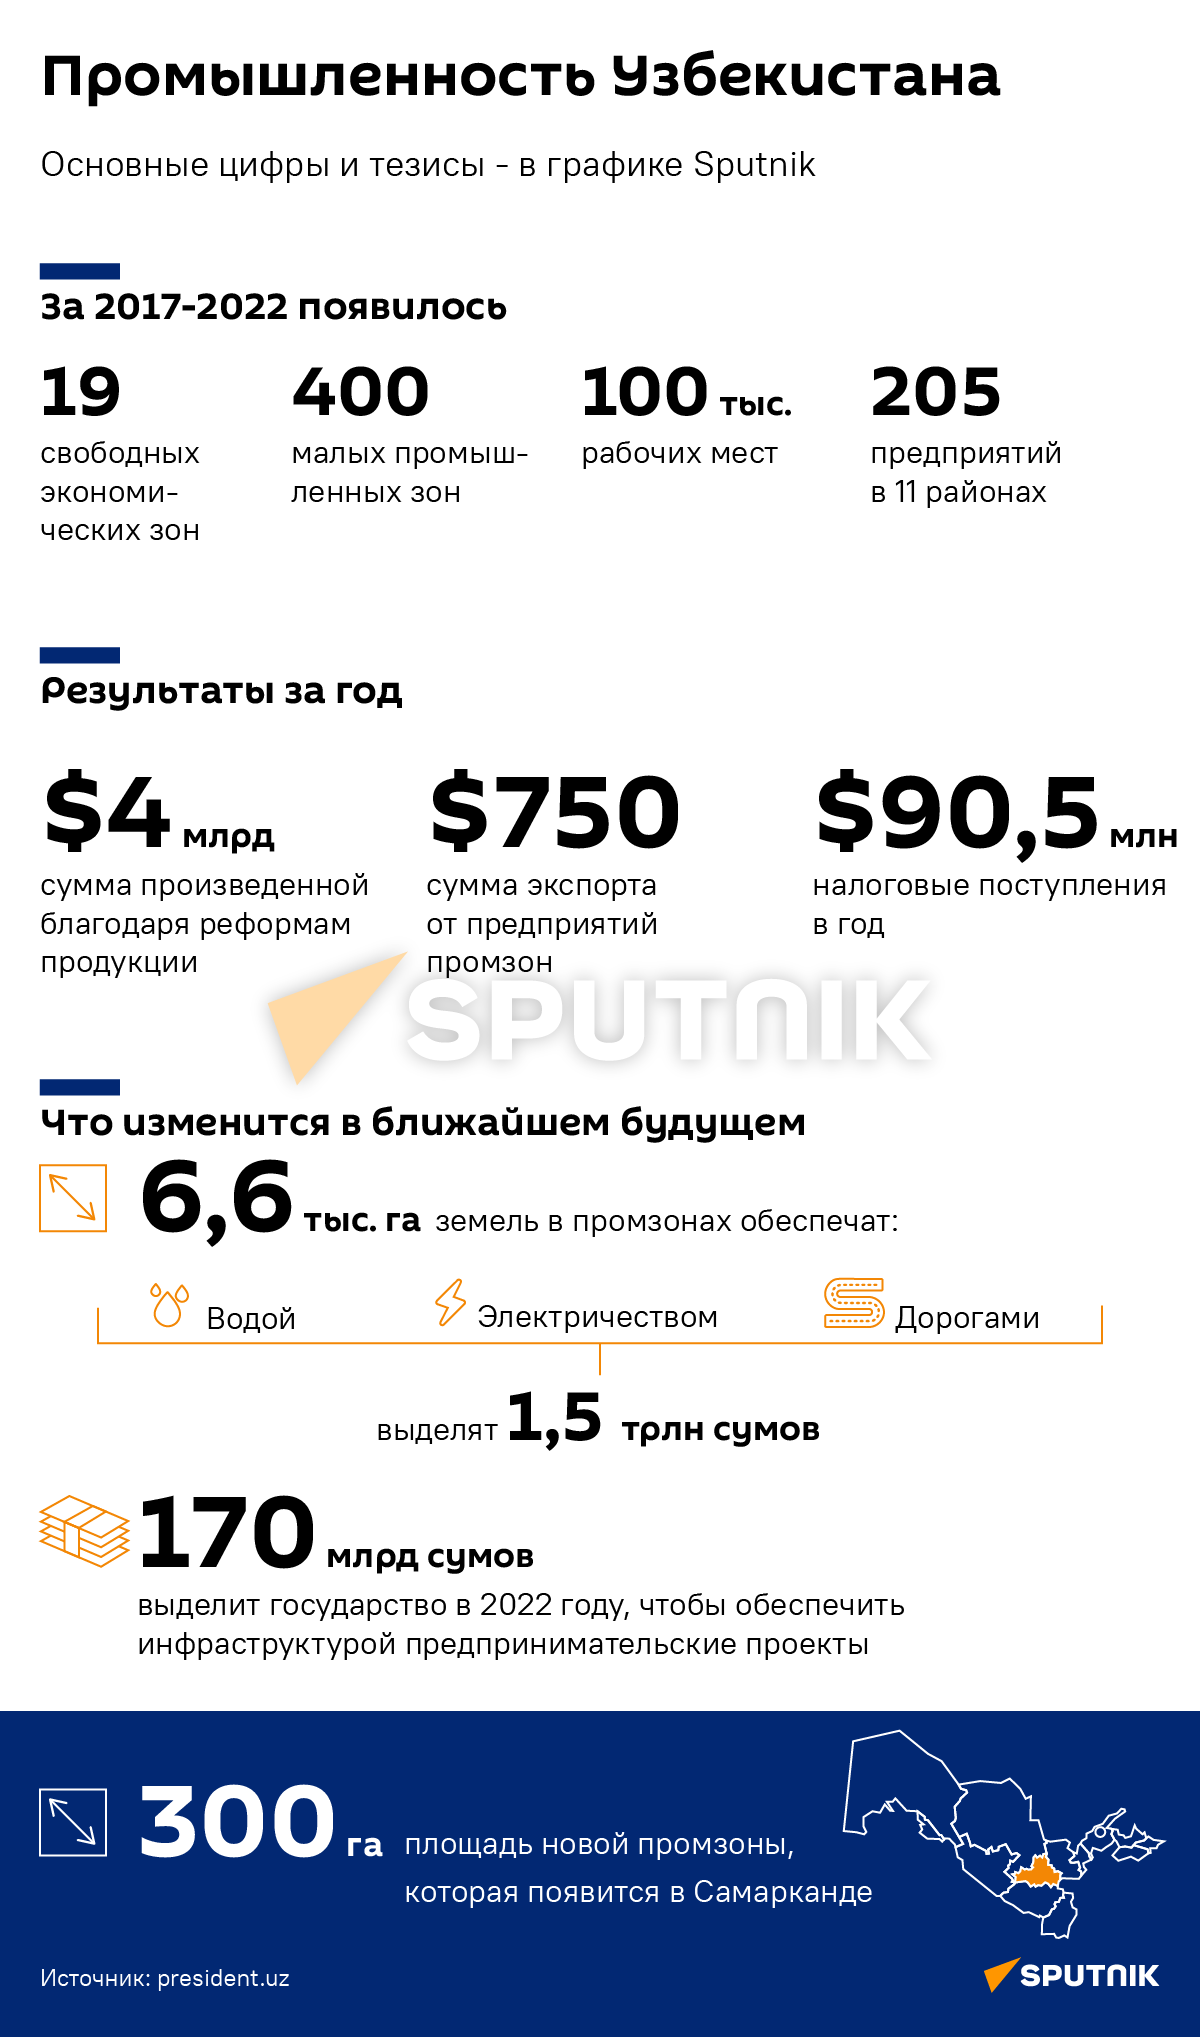 Промышленность Узбекистана деск - Sputnik Узбекистан